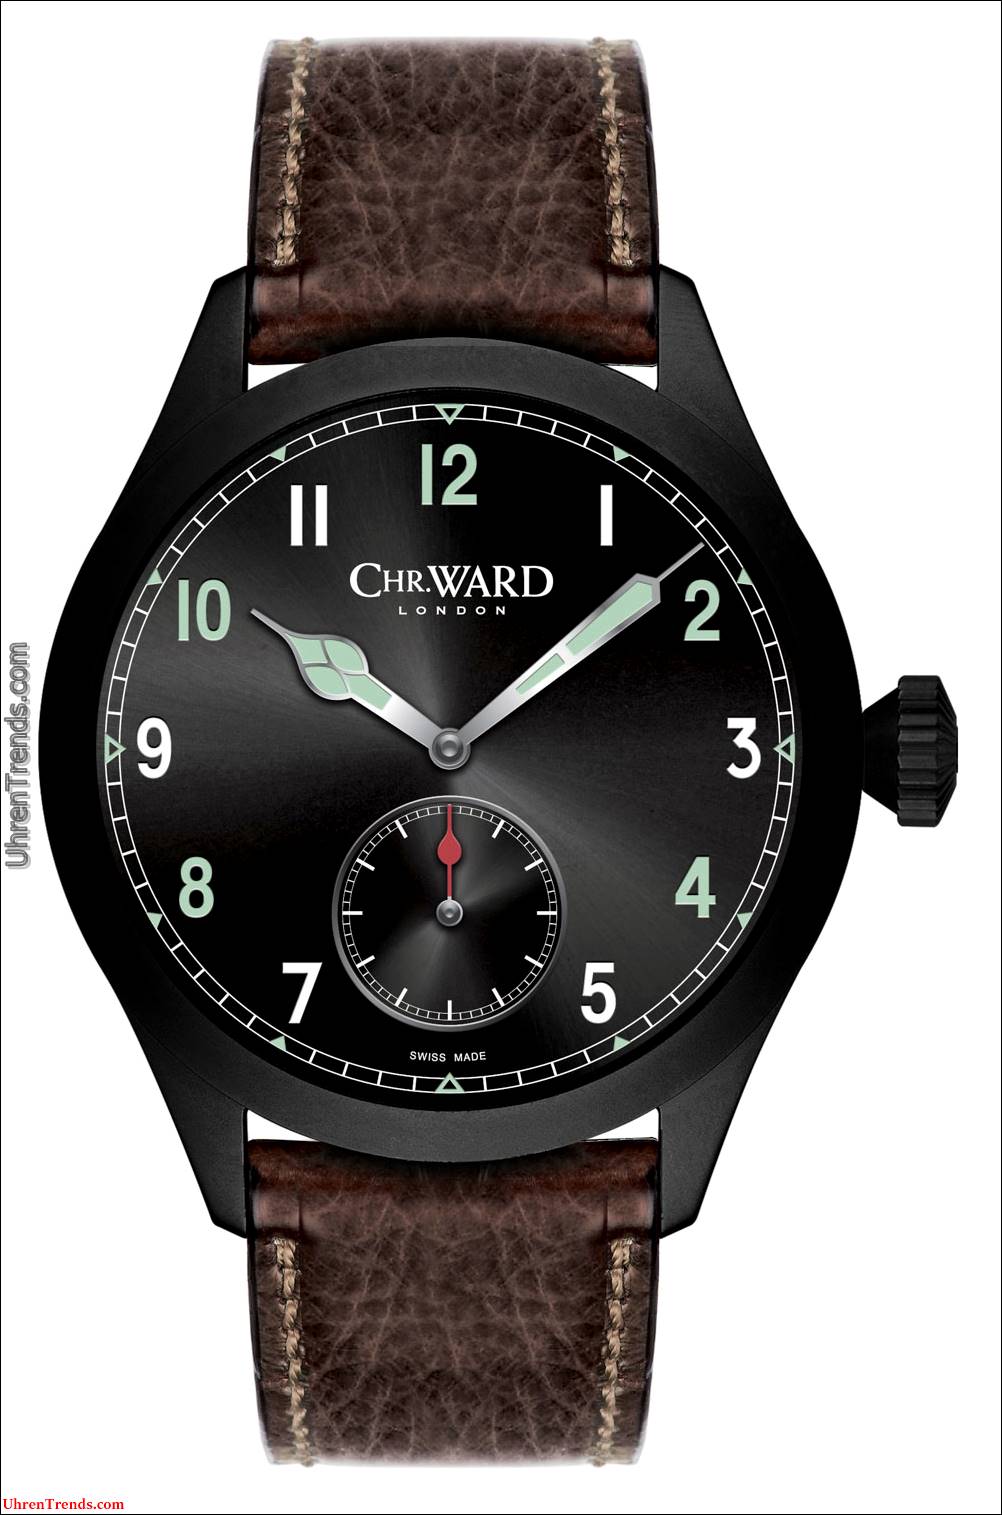 Christopher Ward C8 P7350 Chronometer Uhr Stille Auktion zu Ehren des englischen Gedenktages  